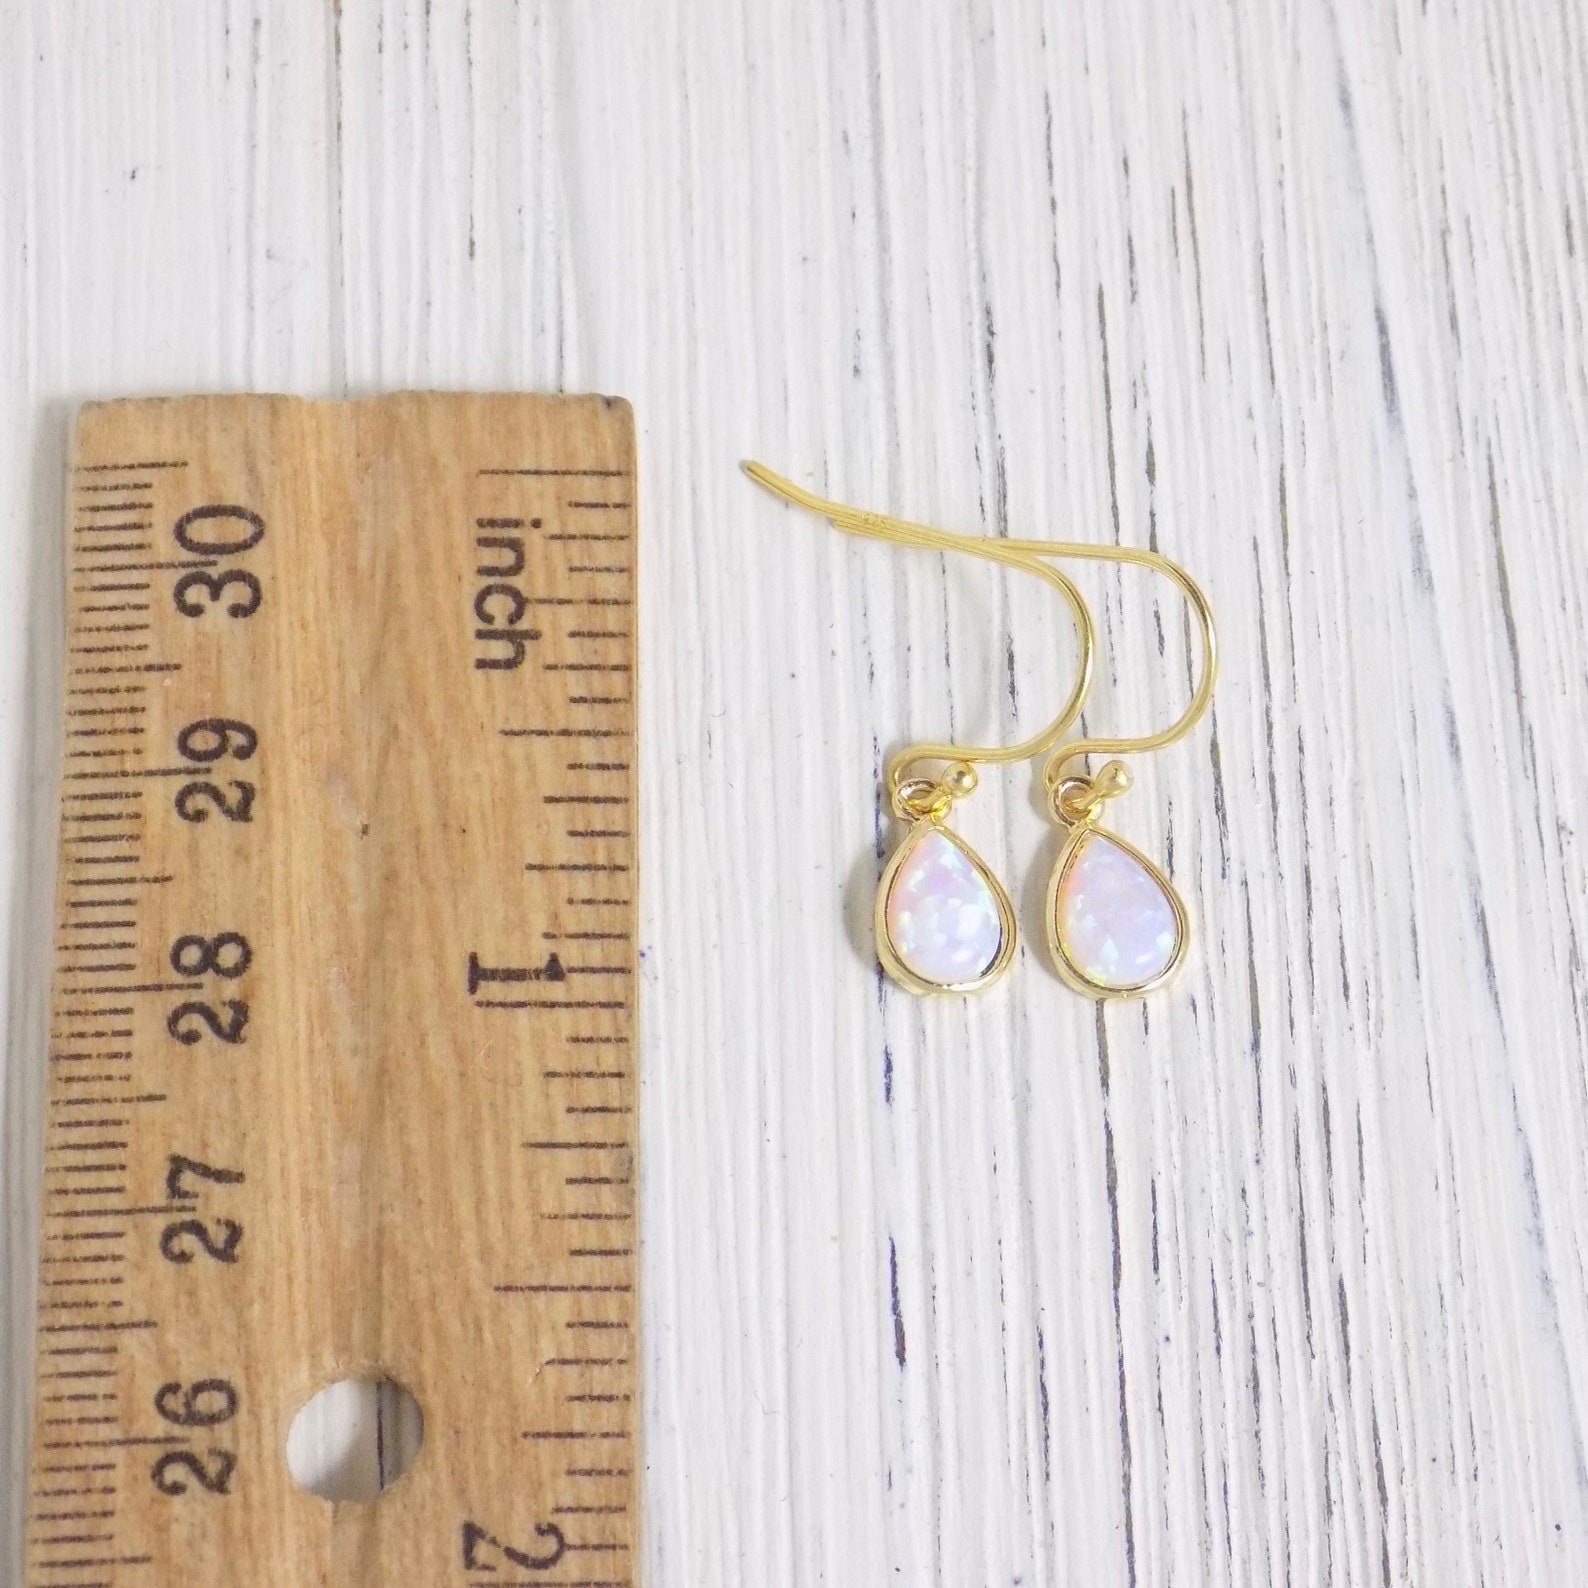 Gold Opal Earrings - Tiny Drop Opal Earring